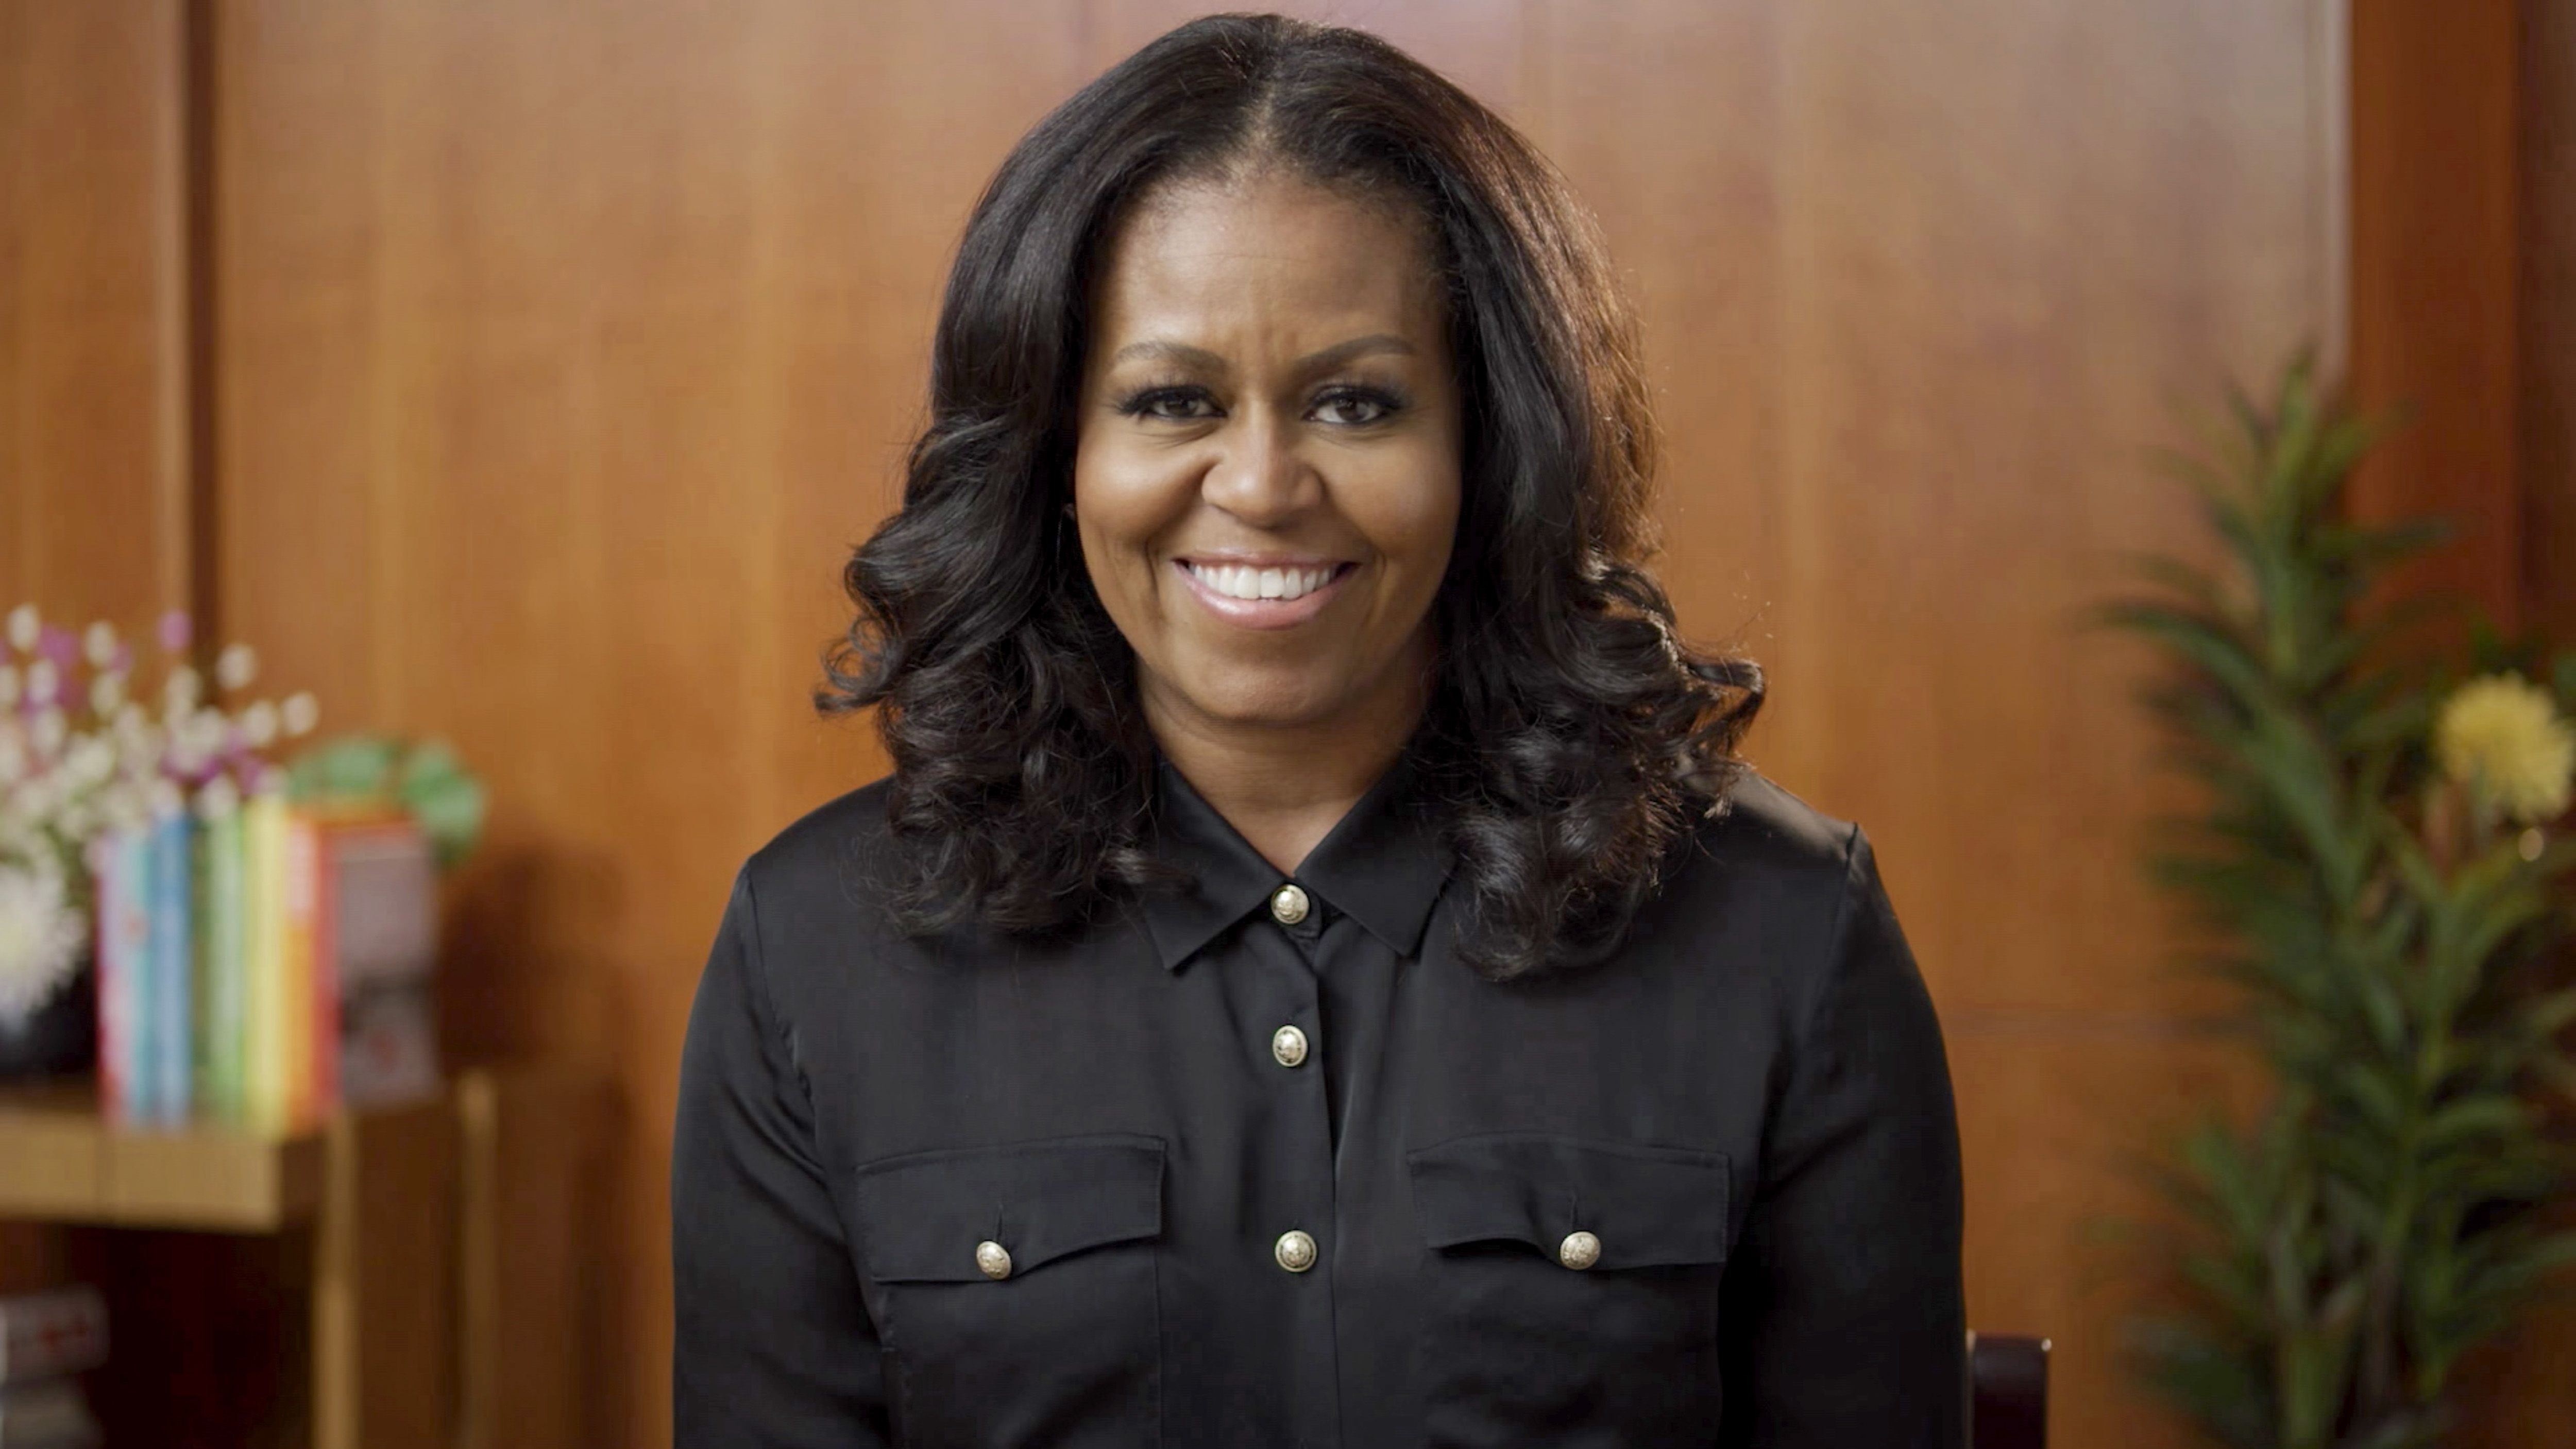 5000px x 2813px - El vÃ­deo viral de Michelle Obama bailando en su cumpleaÃ±os